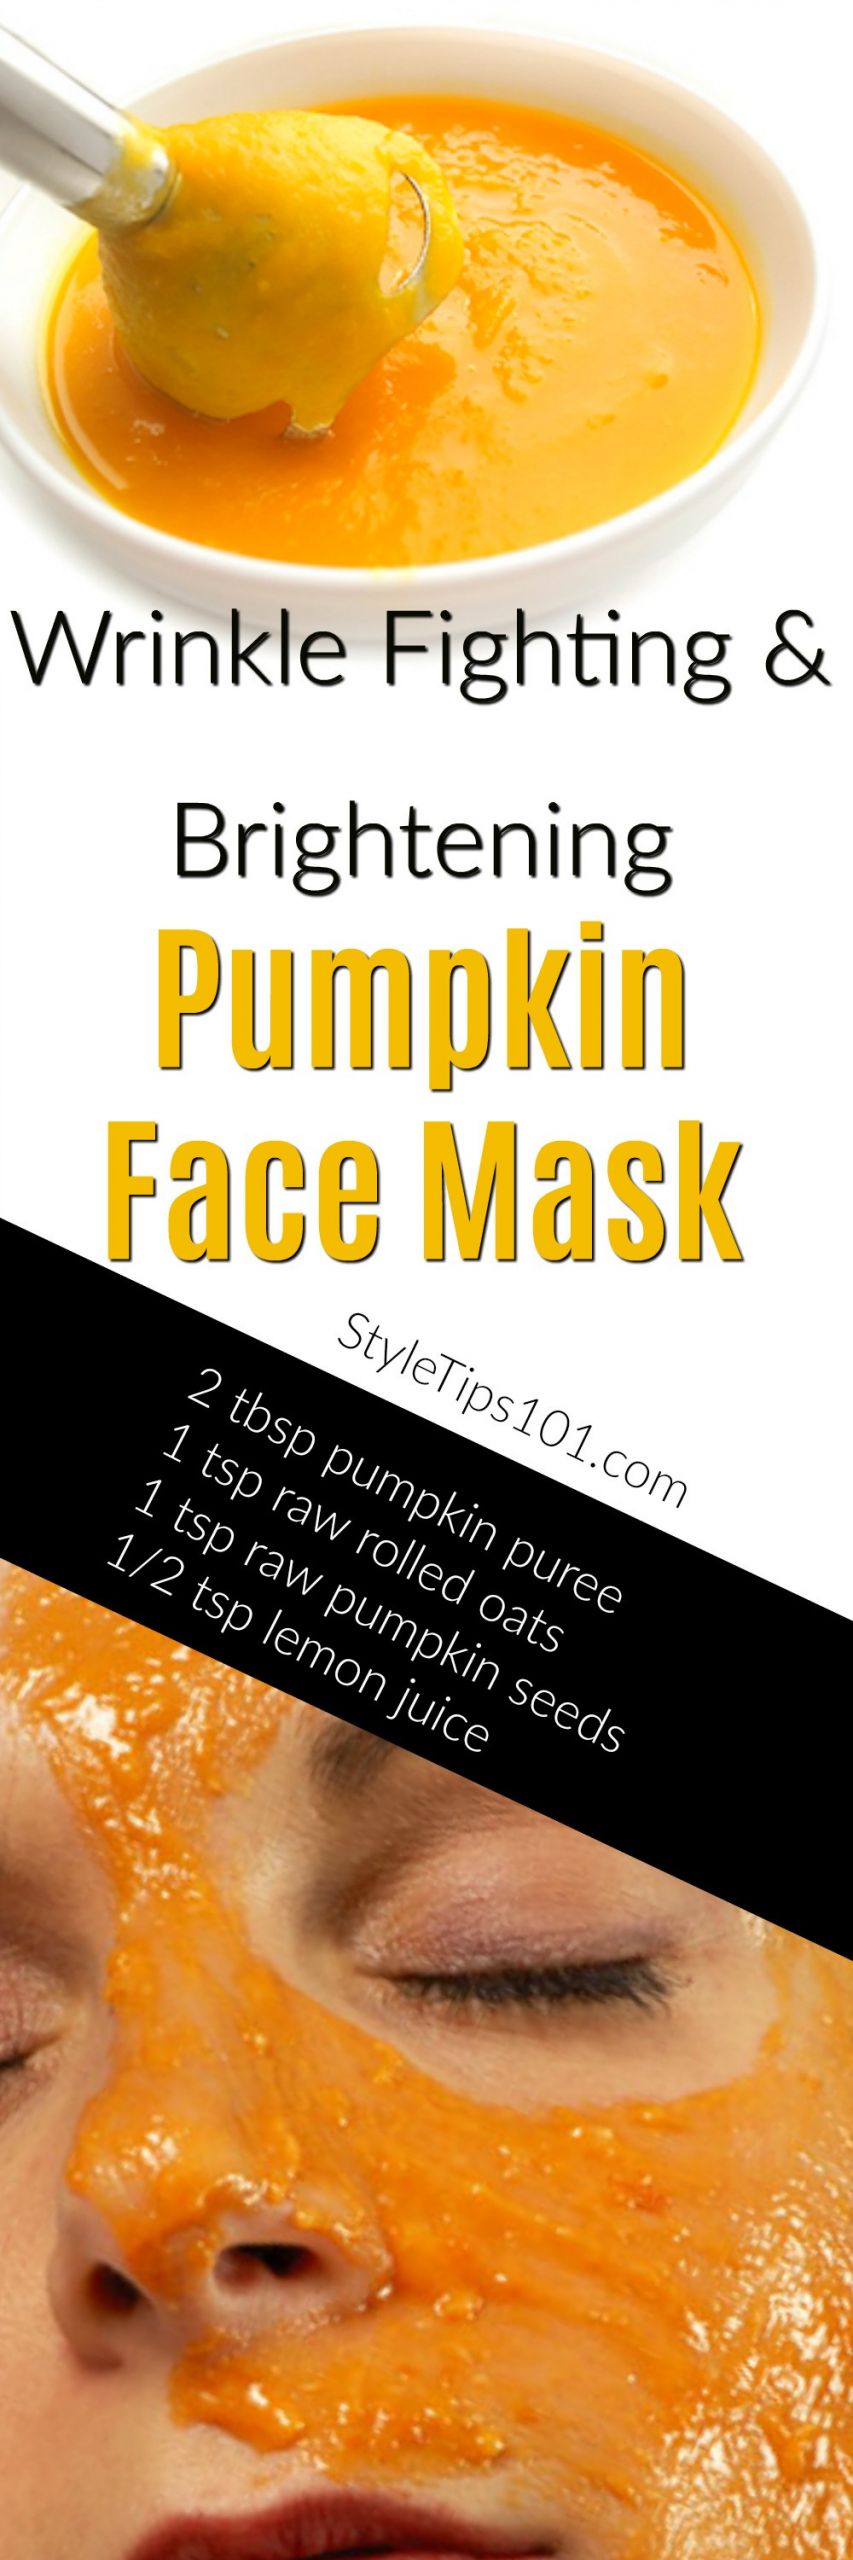 DIY Pumpkin Face Mask
 DIY Pumpkin Face Mask